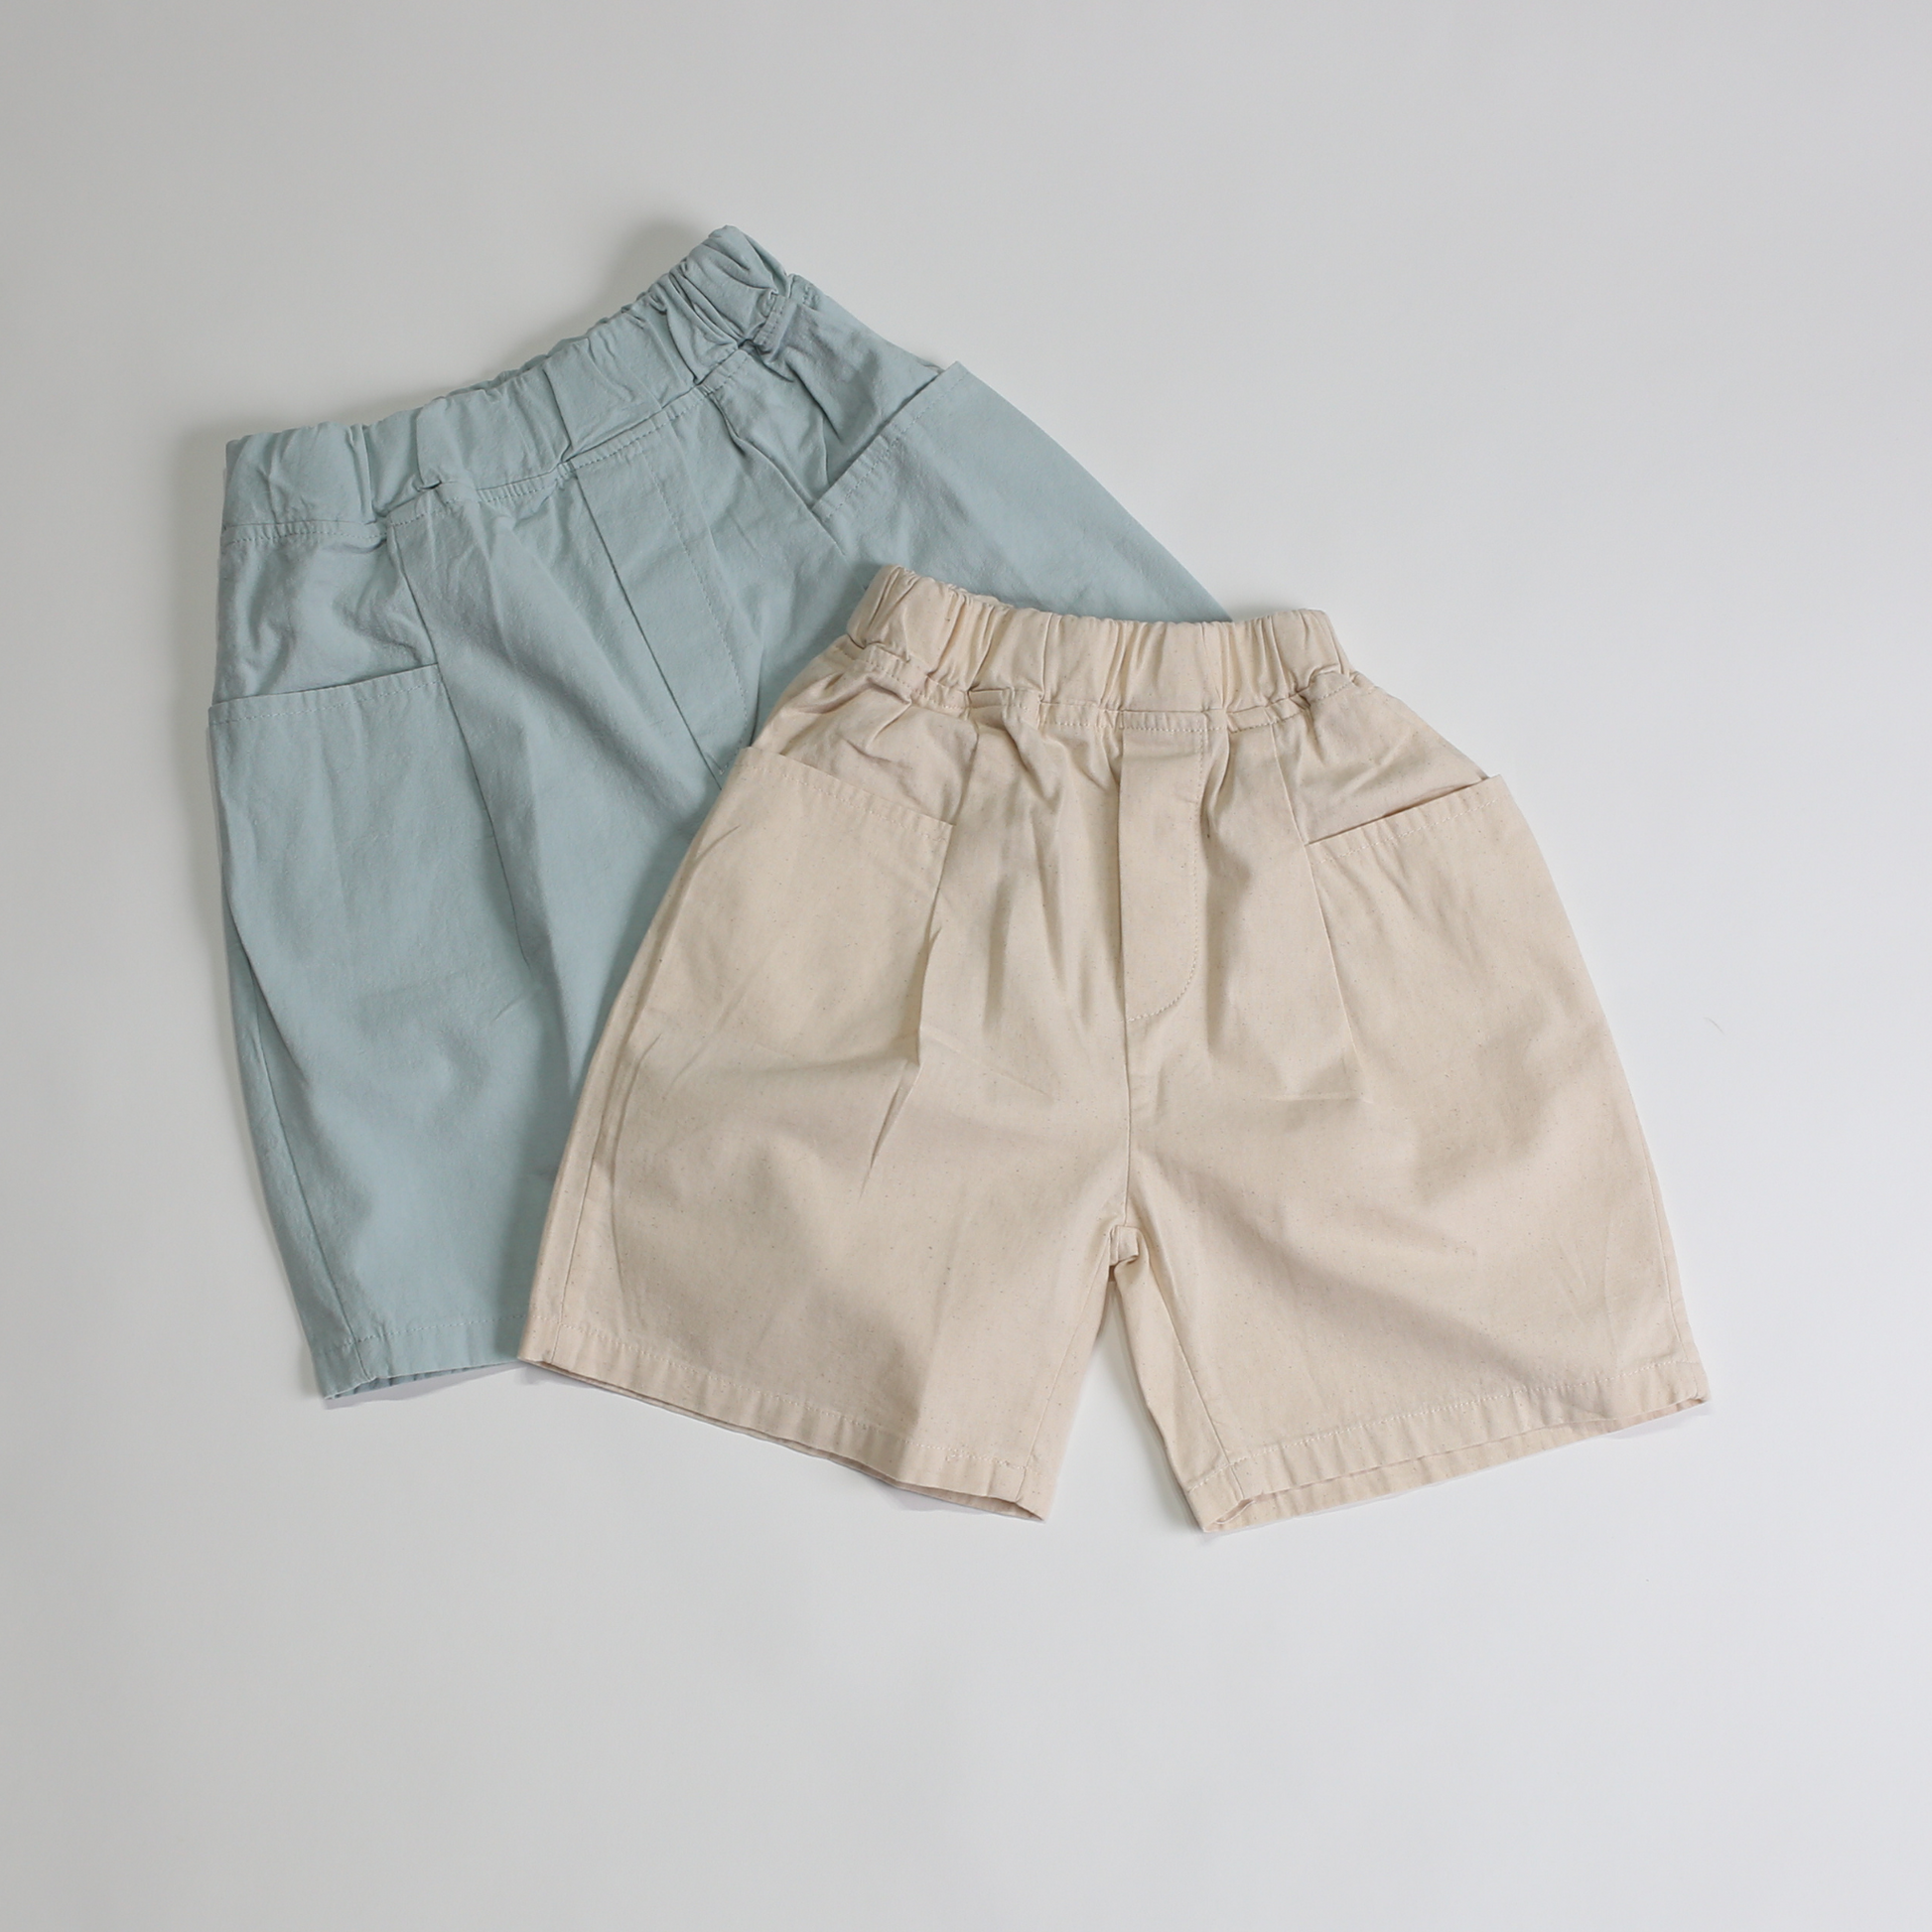 シンプル ポケット ハーフパンツ / simple pocket halfpants (こども服) - kids clothes shop GUZUGUZU